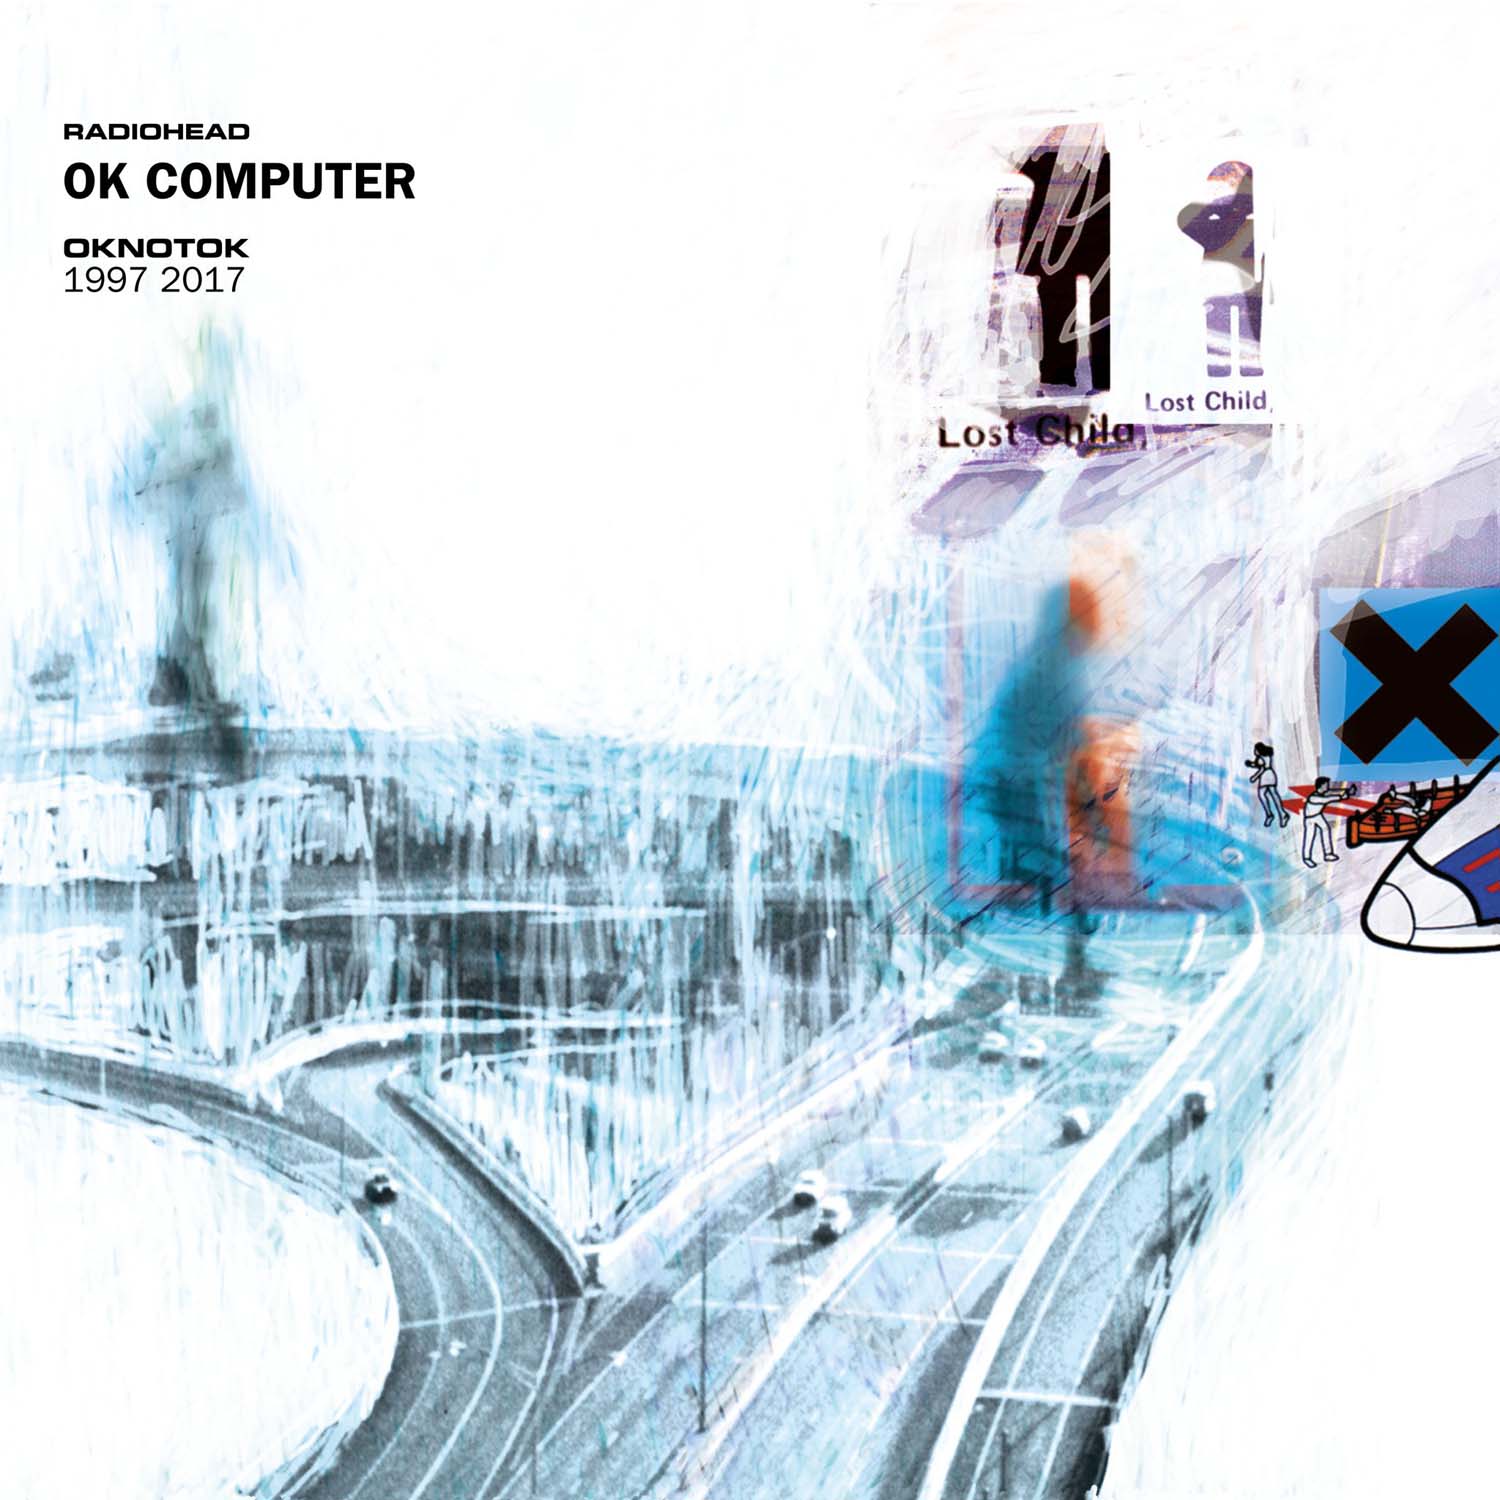 Vinile Radiohead - Ok Computer Oknotok 1997-2017 (3 Lp) NUOVO SIGILLATO, EDIZIONE DEL 23/06/2017 SUBITO DISPONIBILE